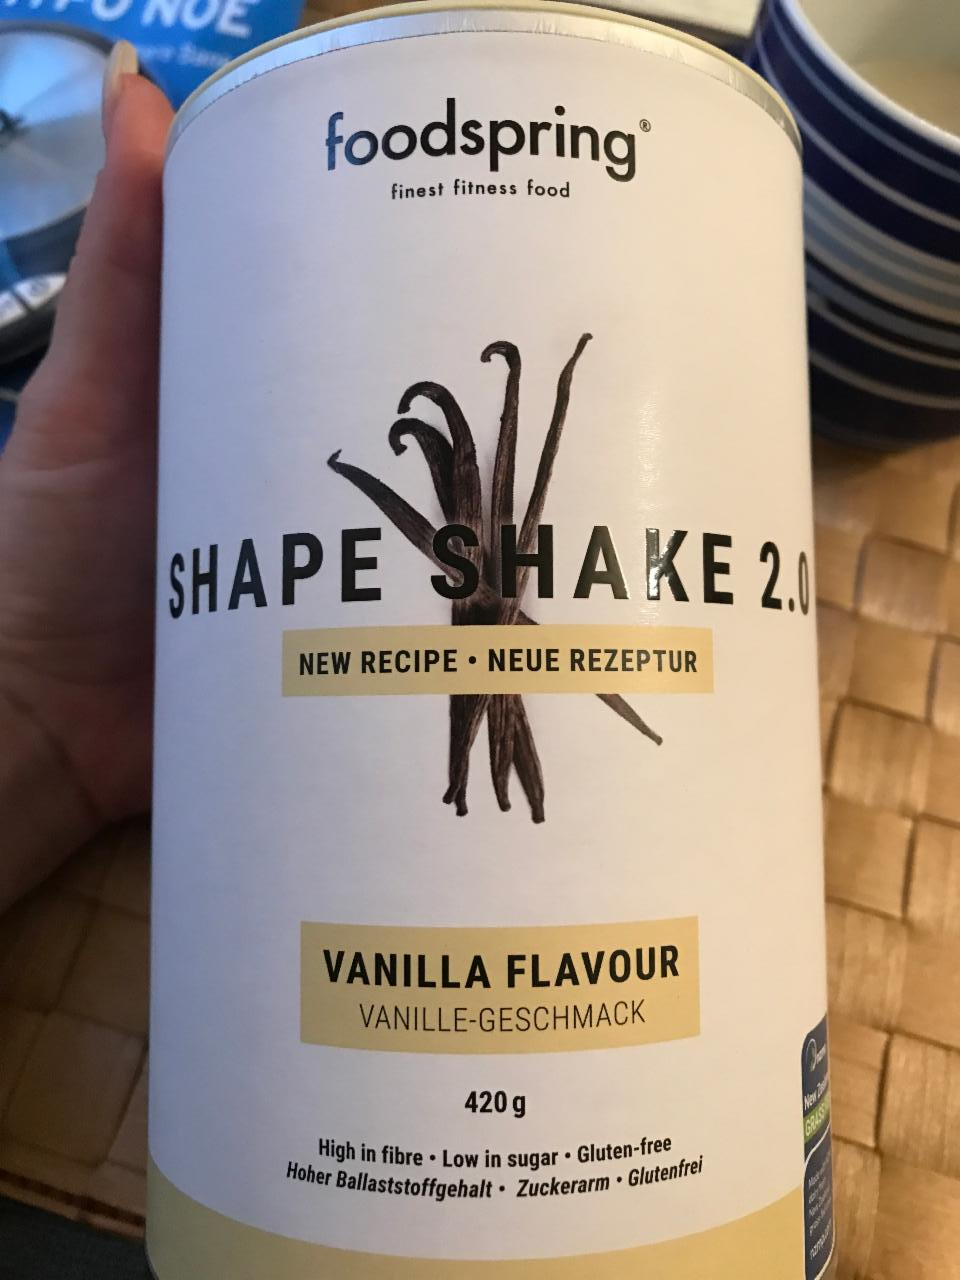 Fotografie - shape shake 2.0 foodspring